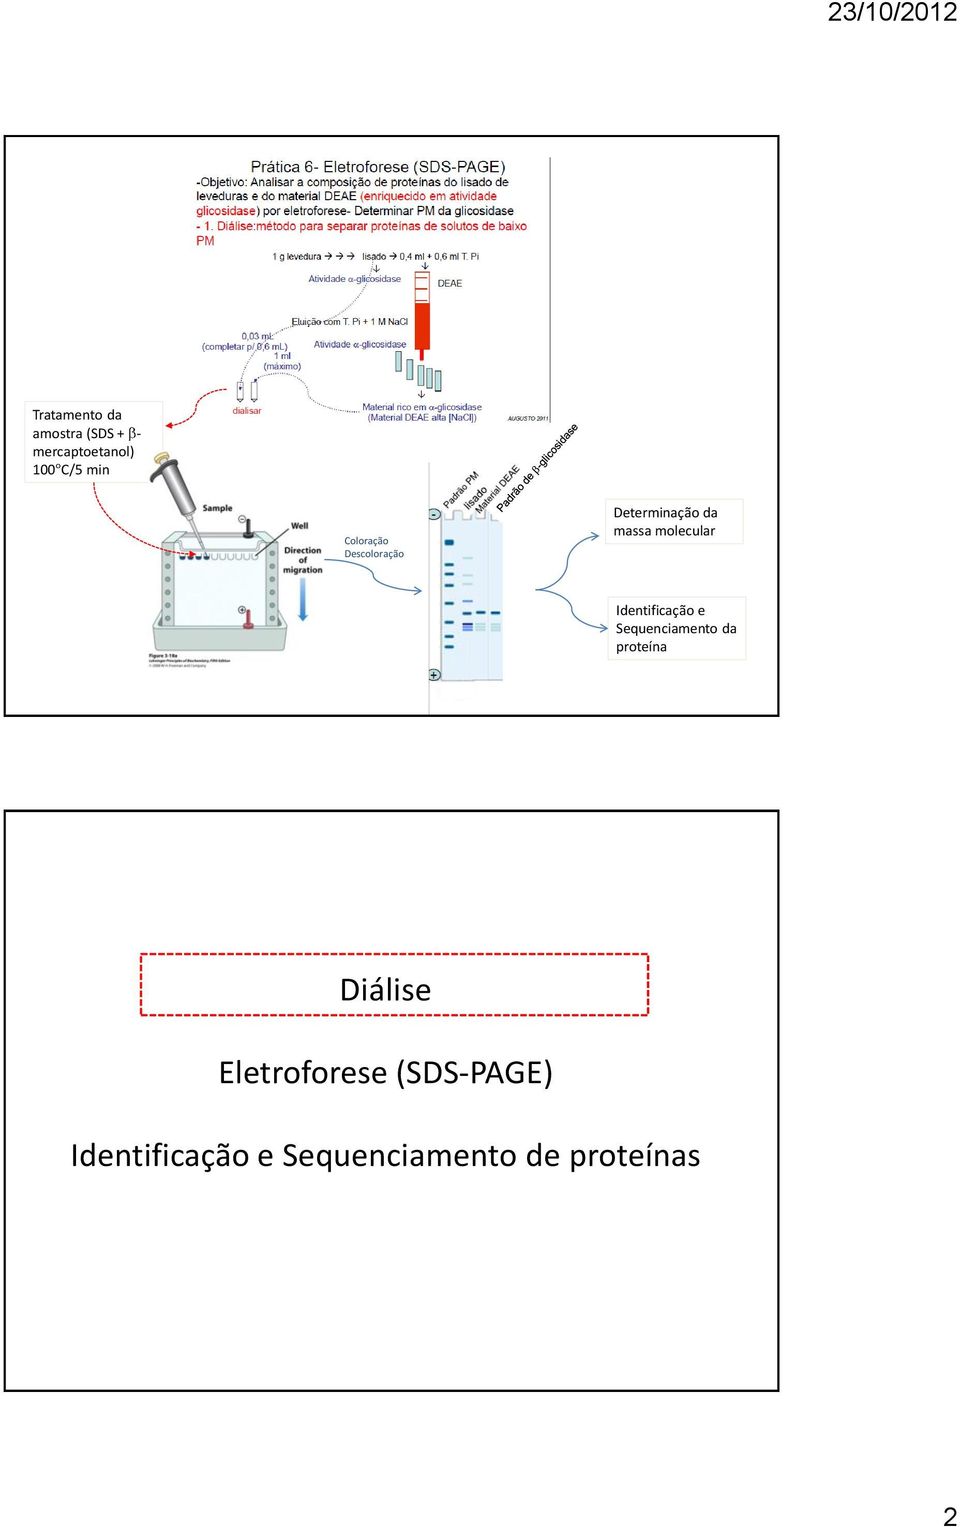 Identificação e Sequenciamento da proteína Diálise